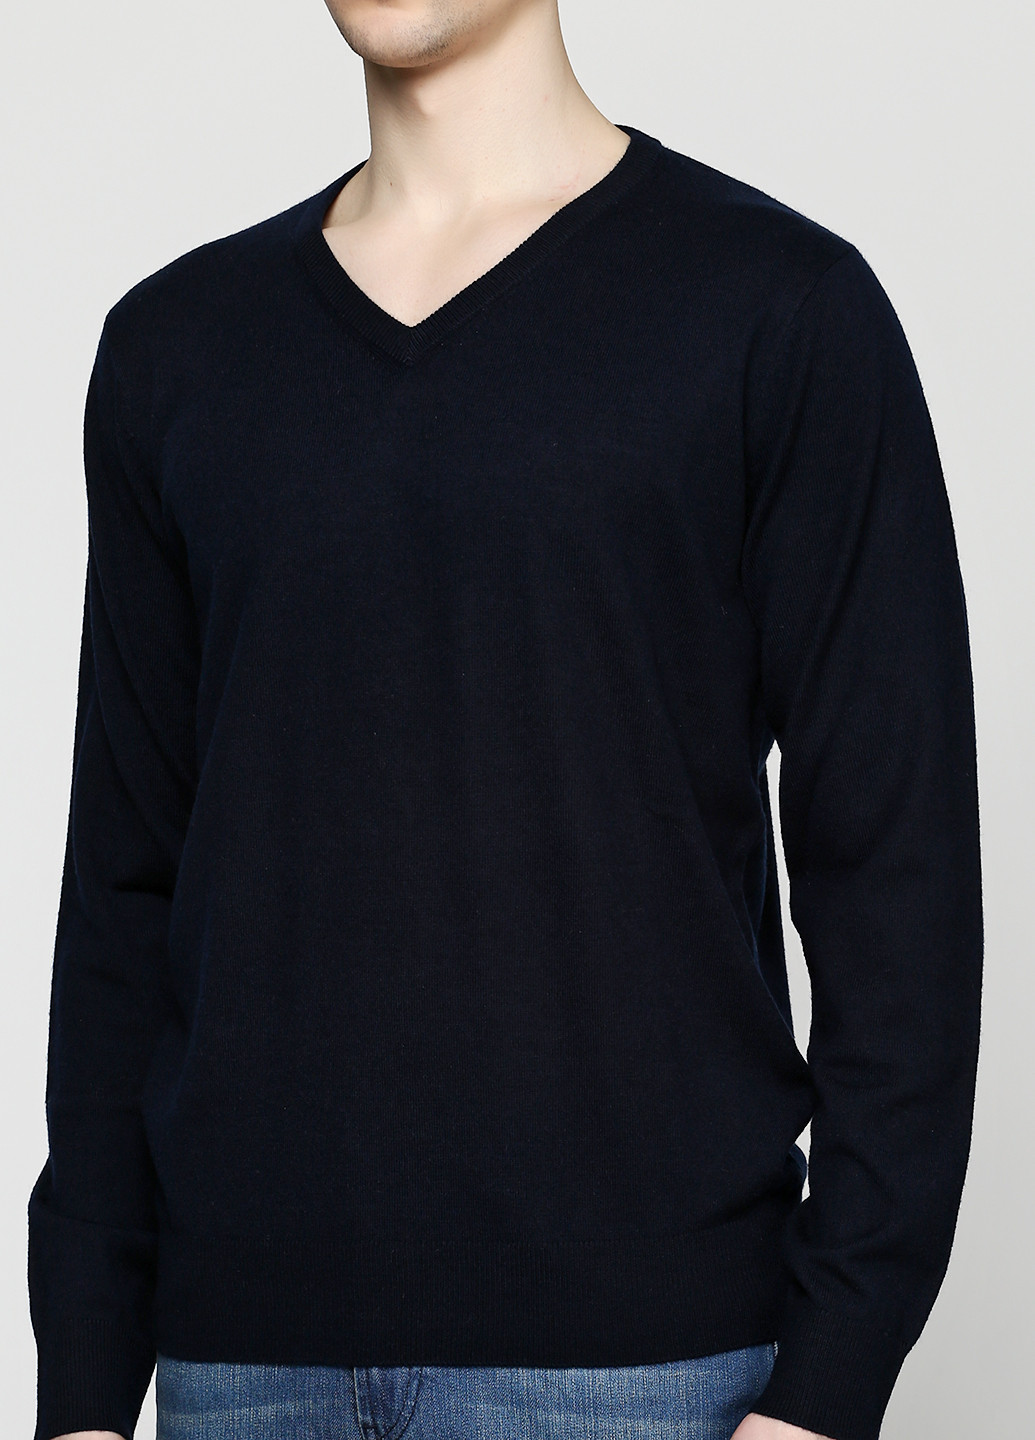 Черный демисезонный пуловер пуловер Pierre Balmain